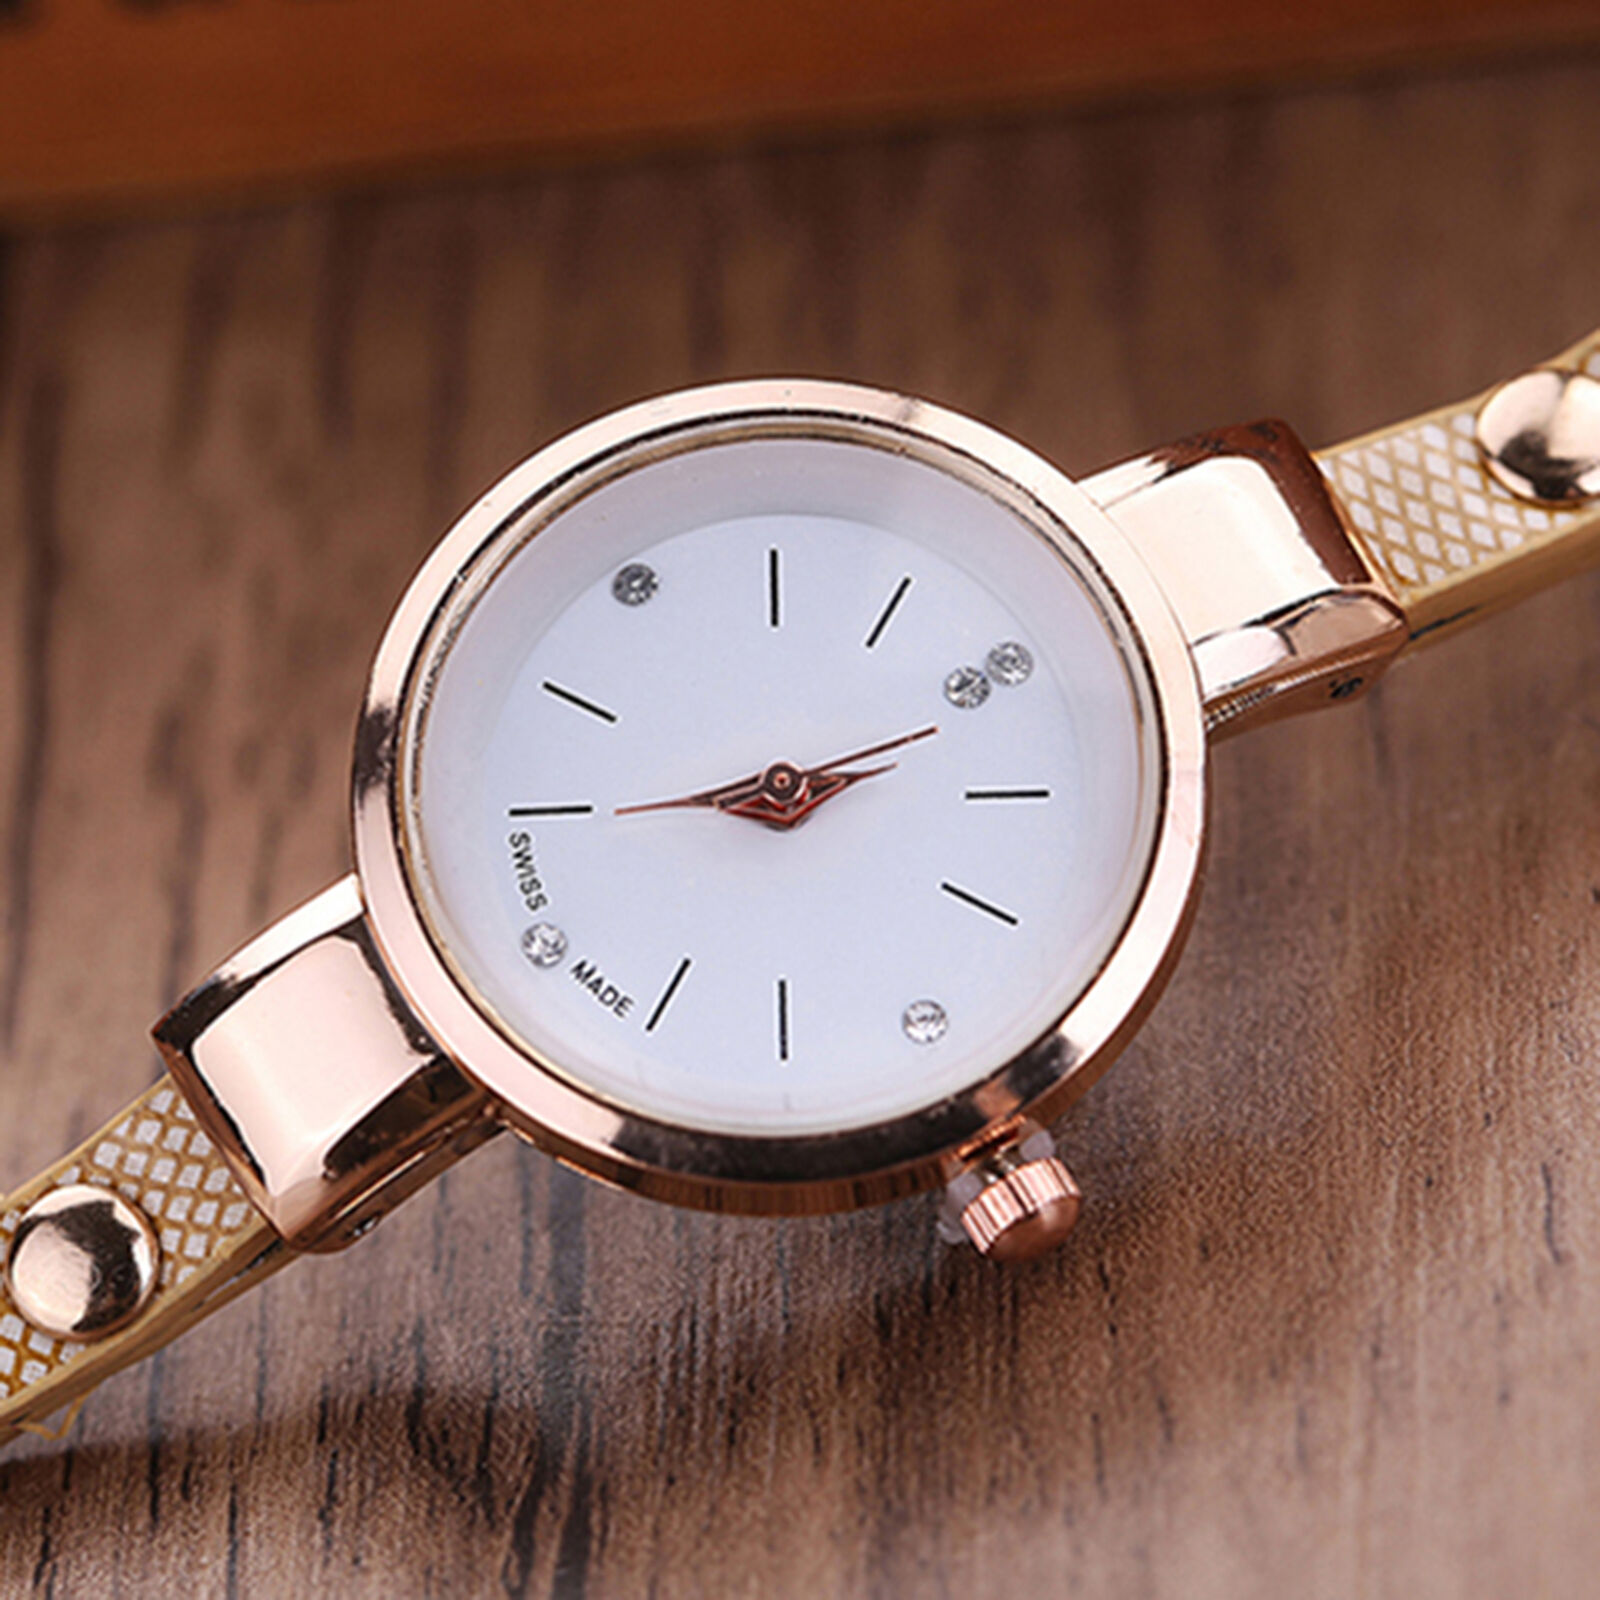 Wrist Watch Unique Rhinestone Inlaid Analog Quartz Watch Alloy Unbranded - фотография #3